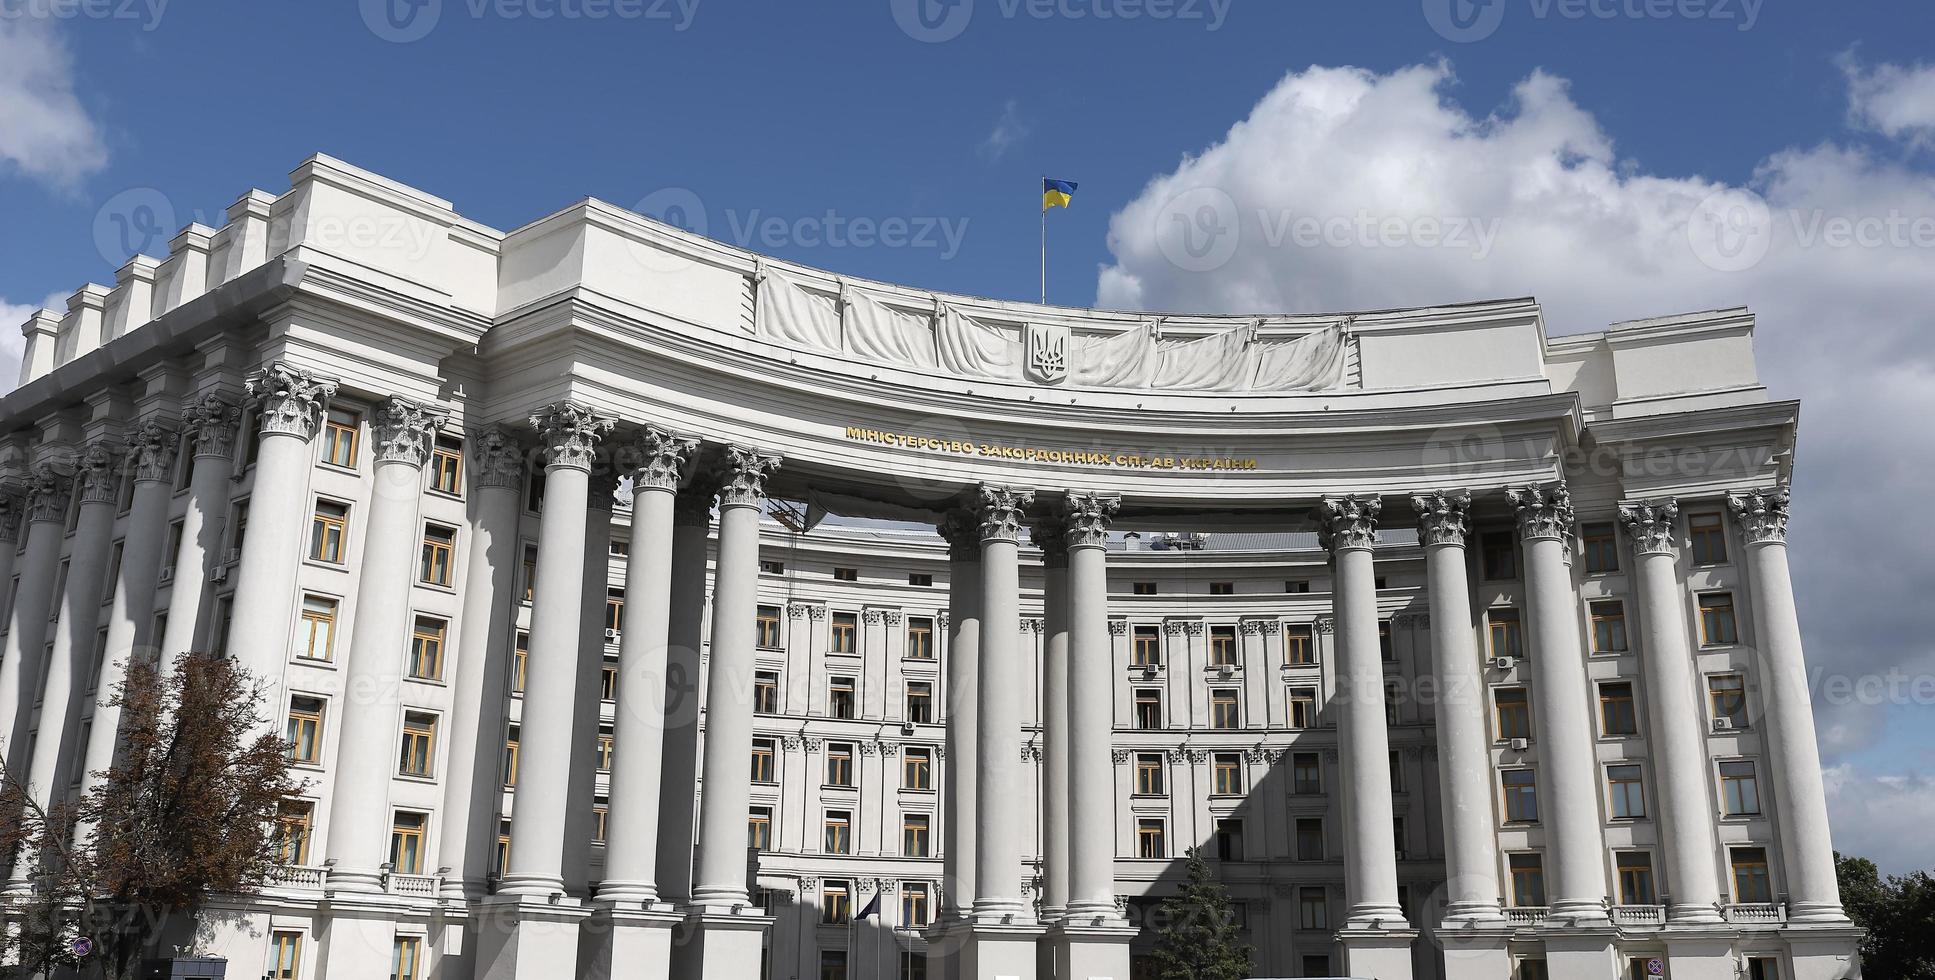 ministerie van buitenlandse zaken van oekraïne gebouw in kiev, oekraïne foto